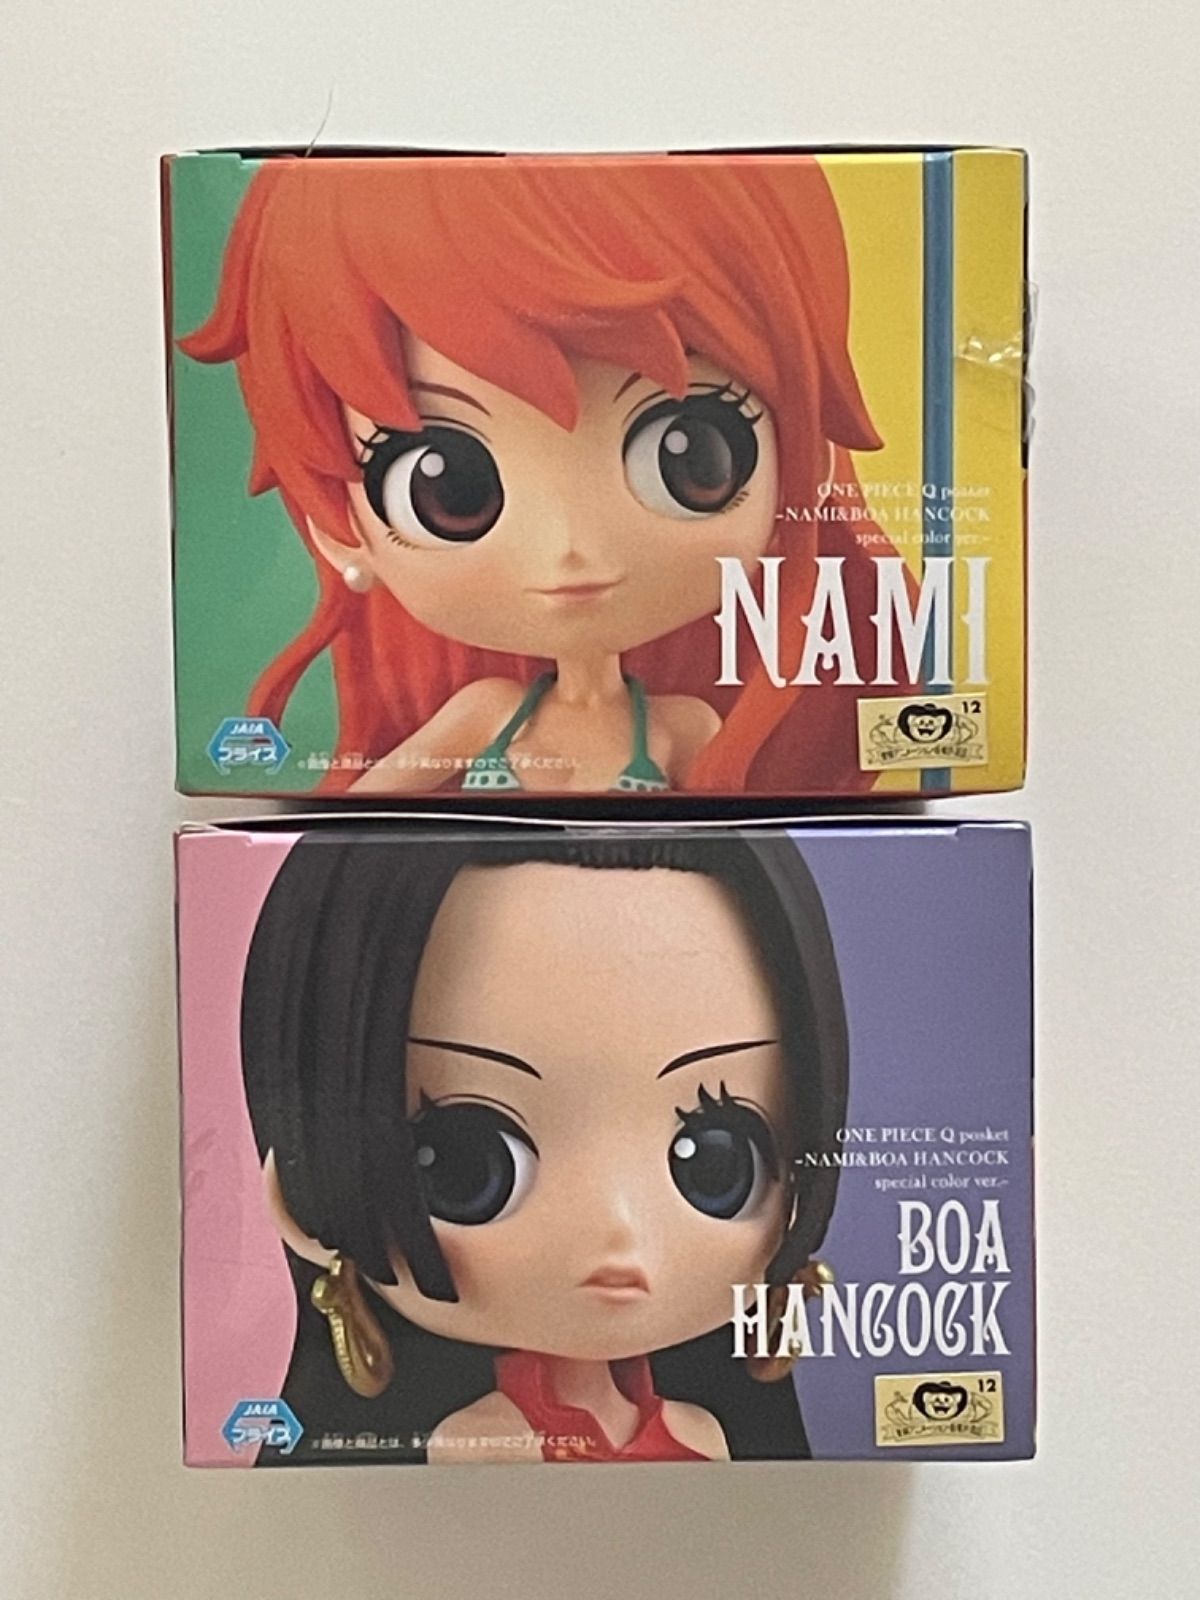 ワンピース Q posket-NAMI&BOA HANCOCK special color ver.- 全2種